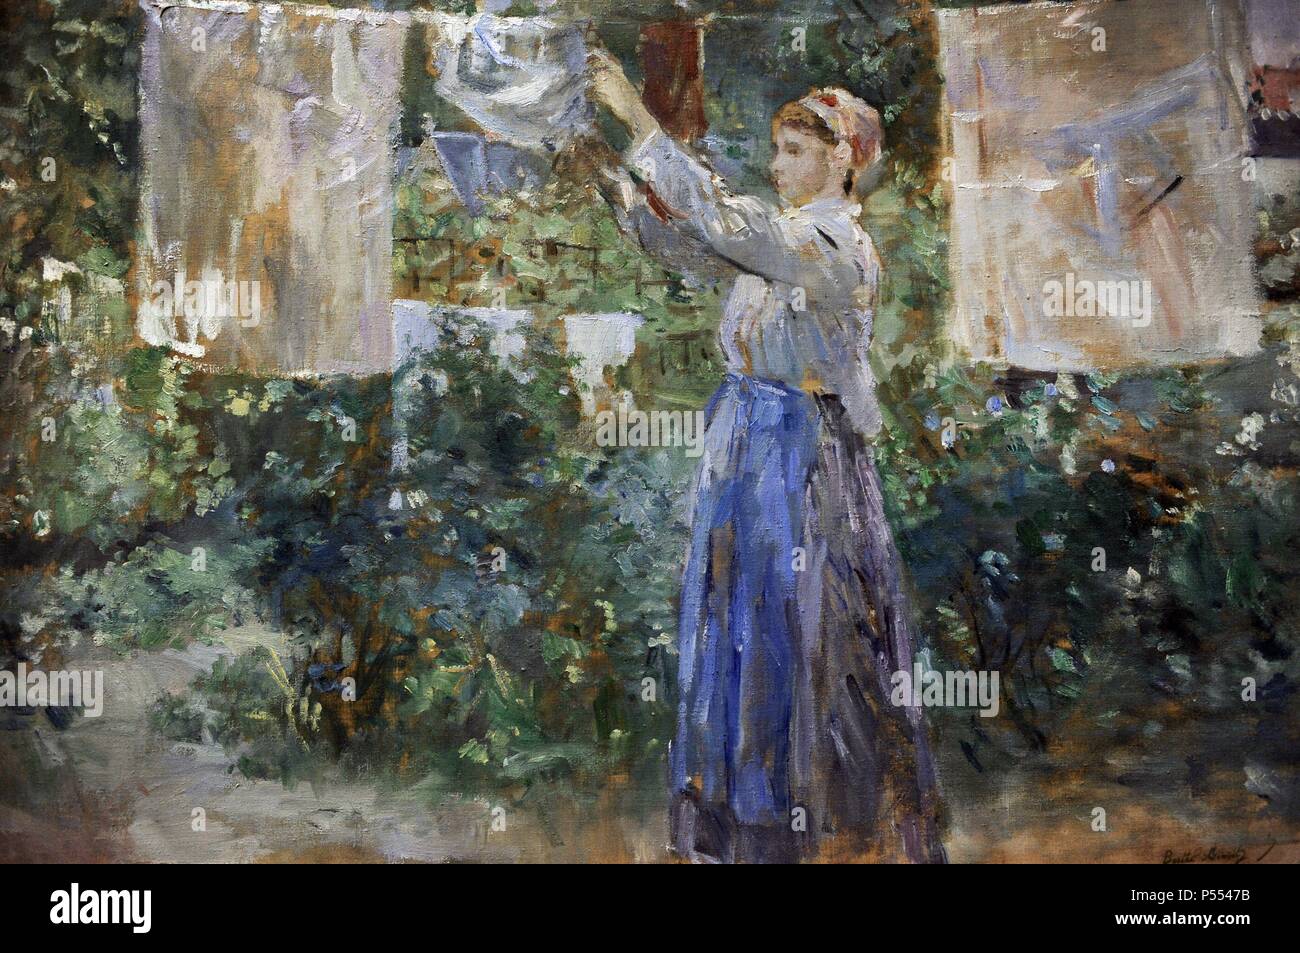 Berthe Morisot (1841-1895). Le peintre français. L'impressionnisme. Fille de paysan d'étendage à sec (1881). Ny Carlsberg Glyptotek. Copenhgen. Le Danemark. Banque D'Images